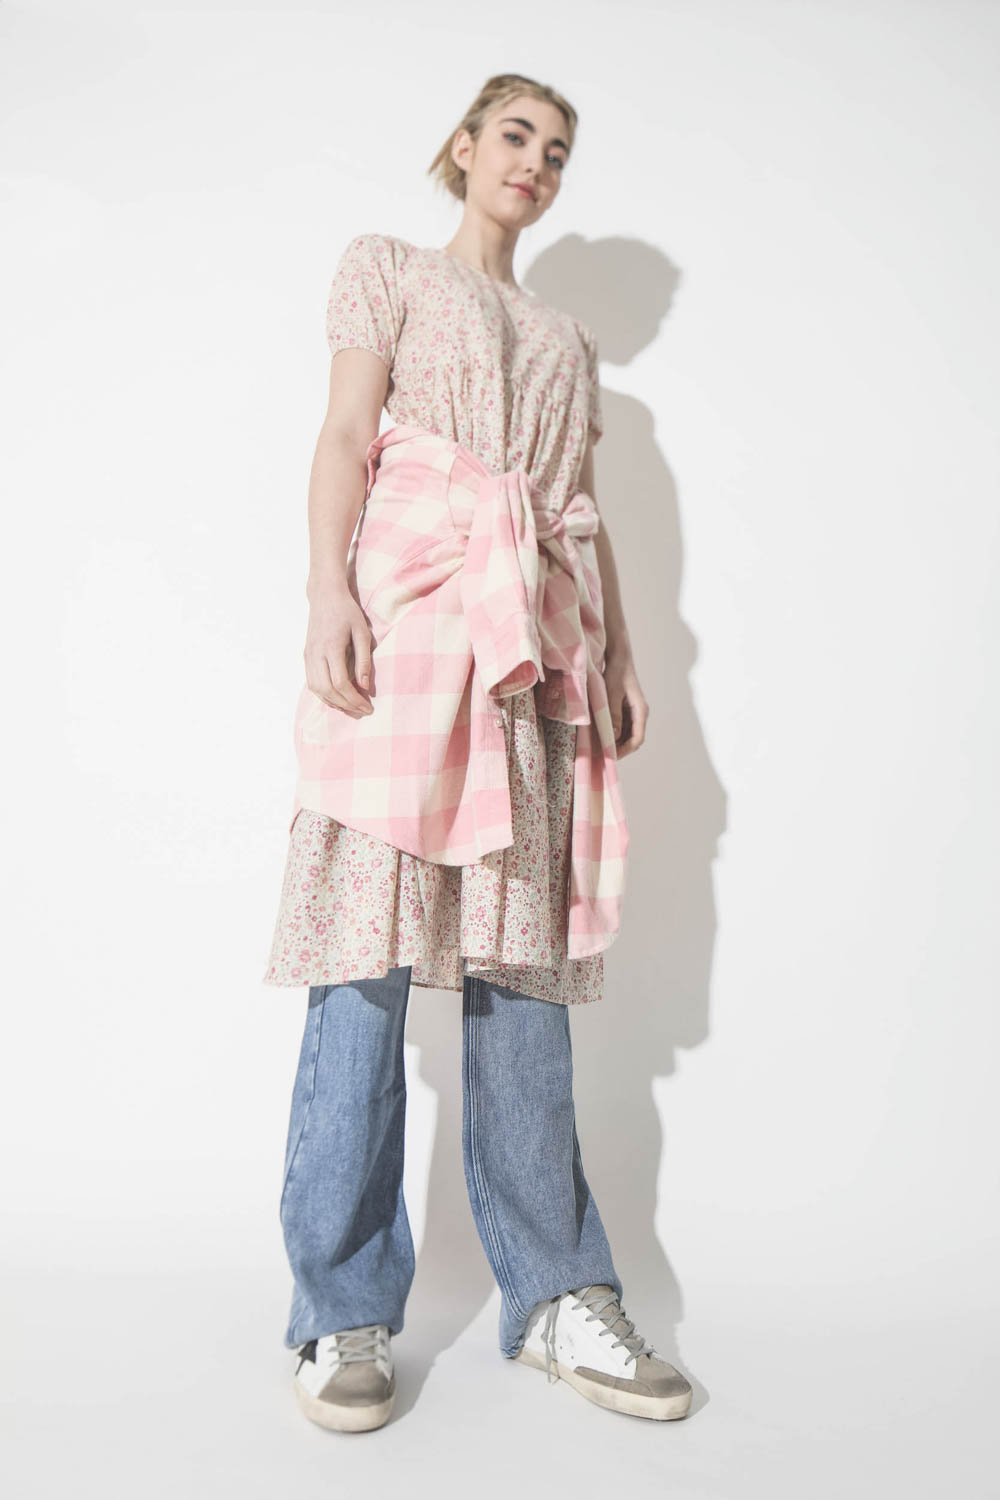 Robe mi-longue en coton imprimé fleurs Tiered Midi Pink Floral Denimist. Porté ceinturé.